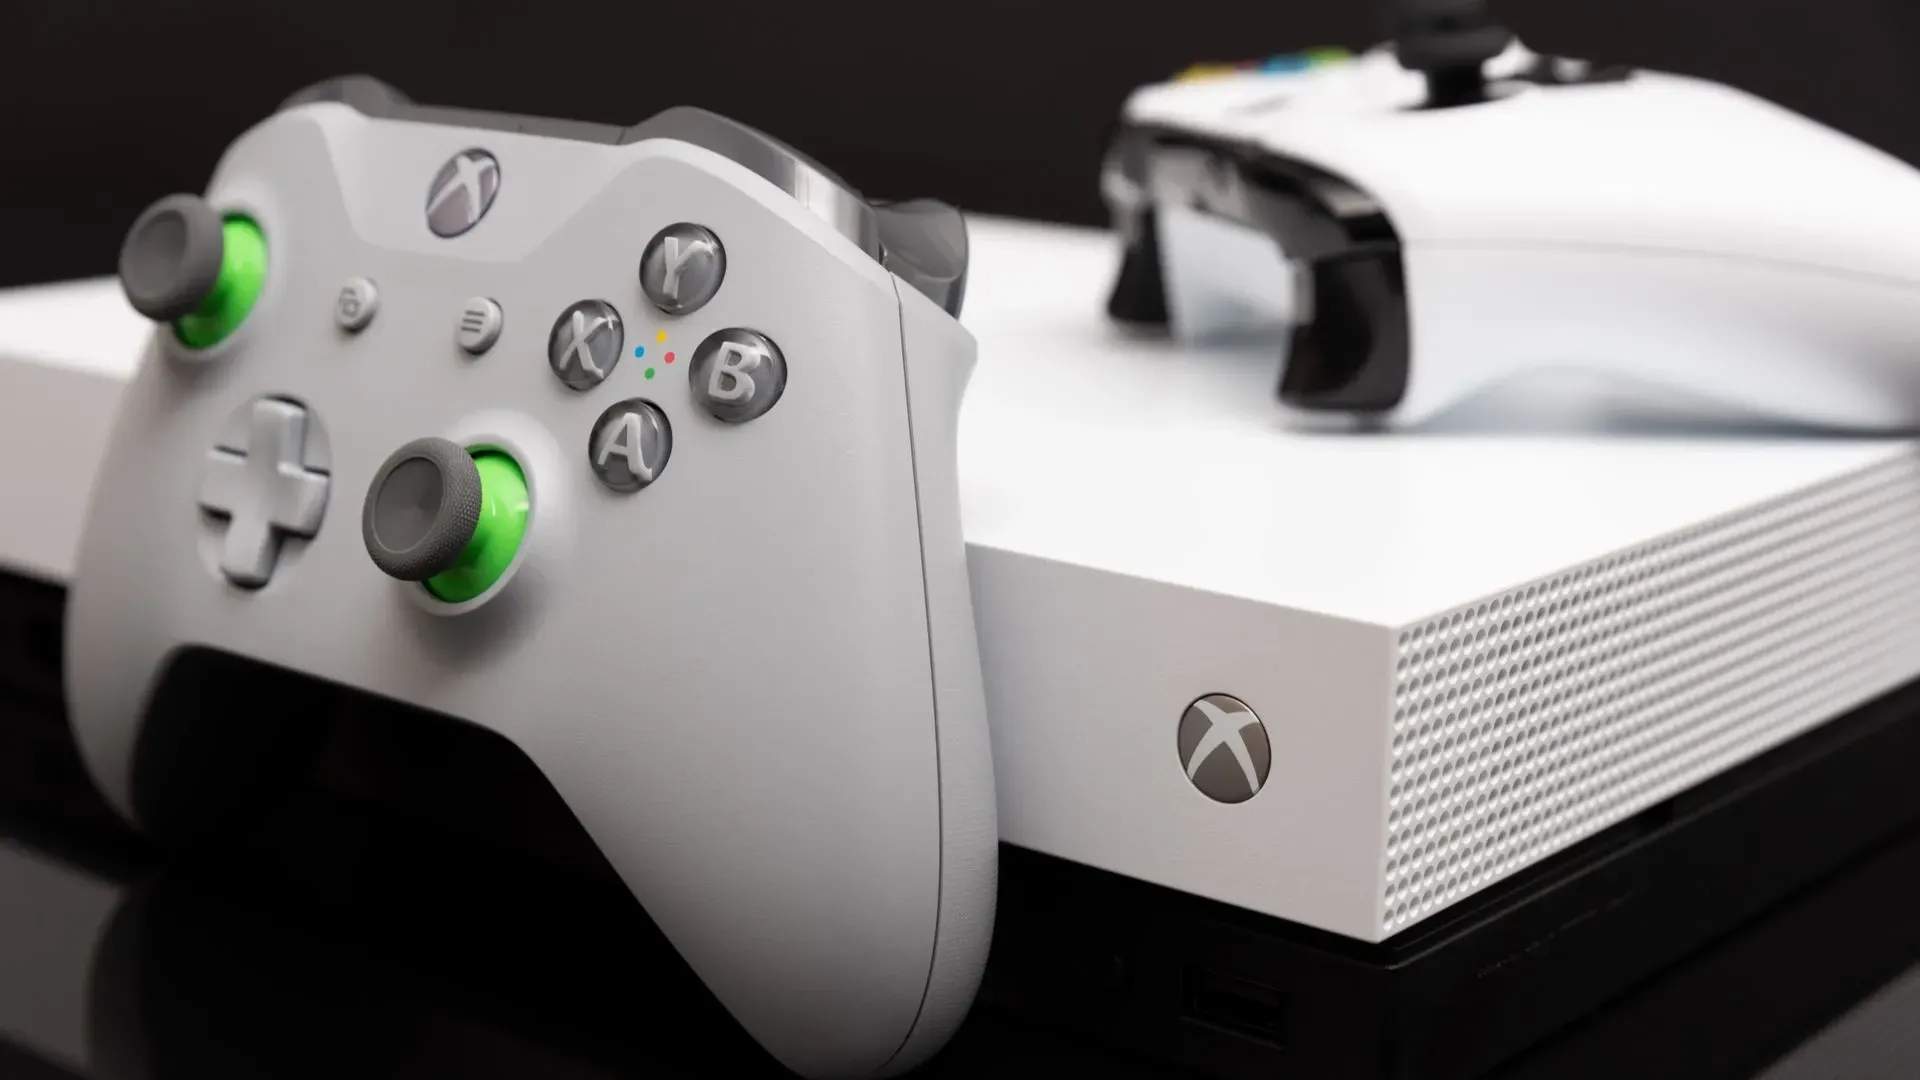 Comprou um Xbox Series X ou S? 10 dicas para conhecer os consoles